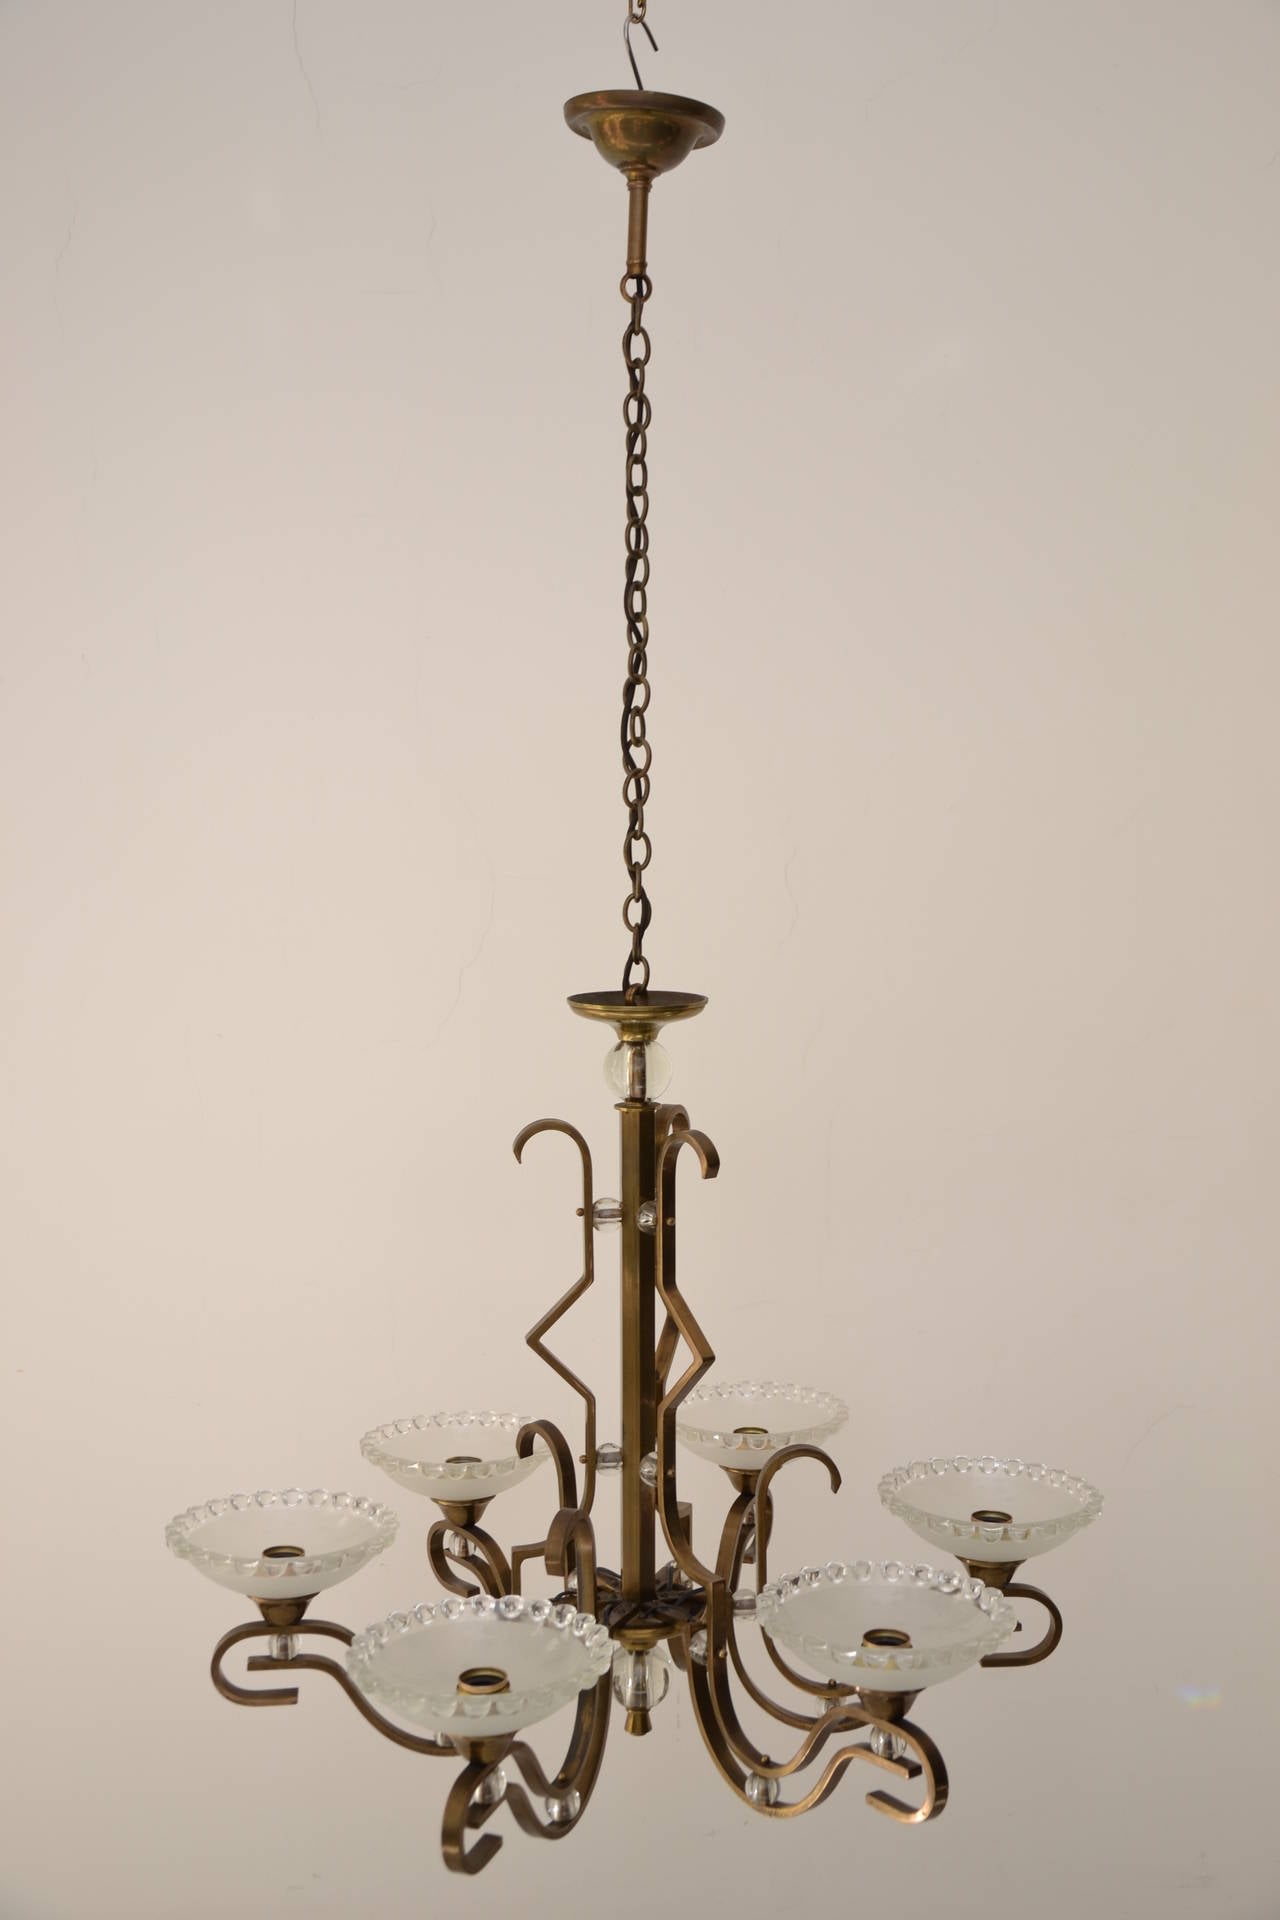 Extraordinary adjustable chandelier Vienna, circa 1920
Excellent original condition.